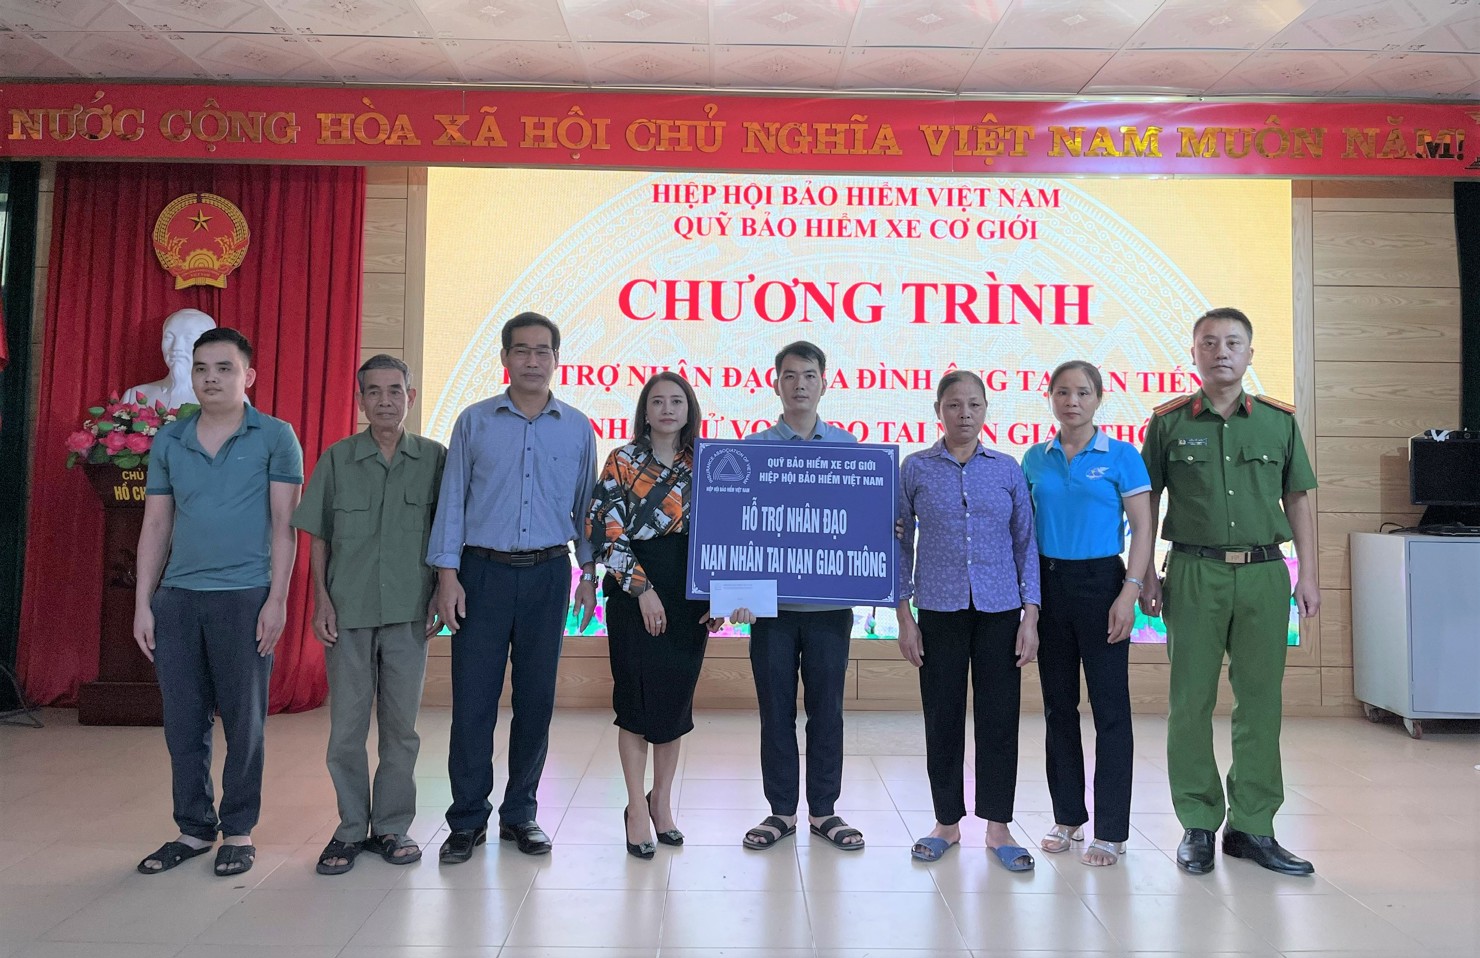 Đại diện Quỹ Bảo hiểm xe cơ giới trao hỗ trợ nhân đạo cho gia đình nạn nhân Tạ Văn Tiến.